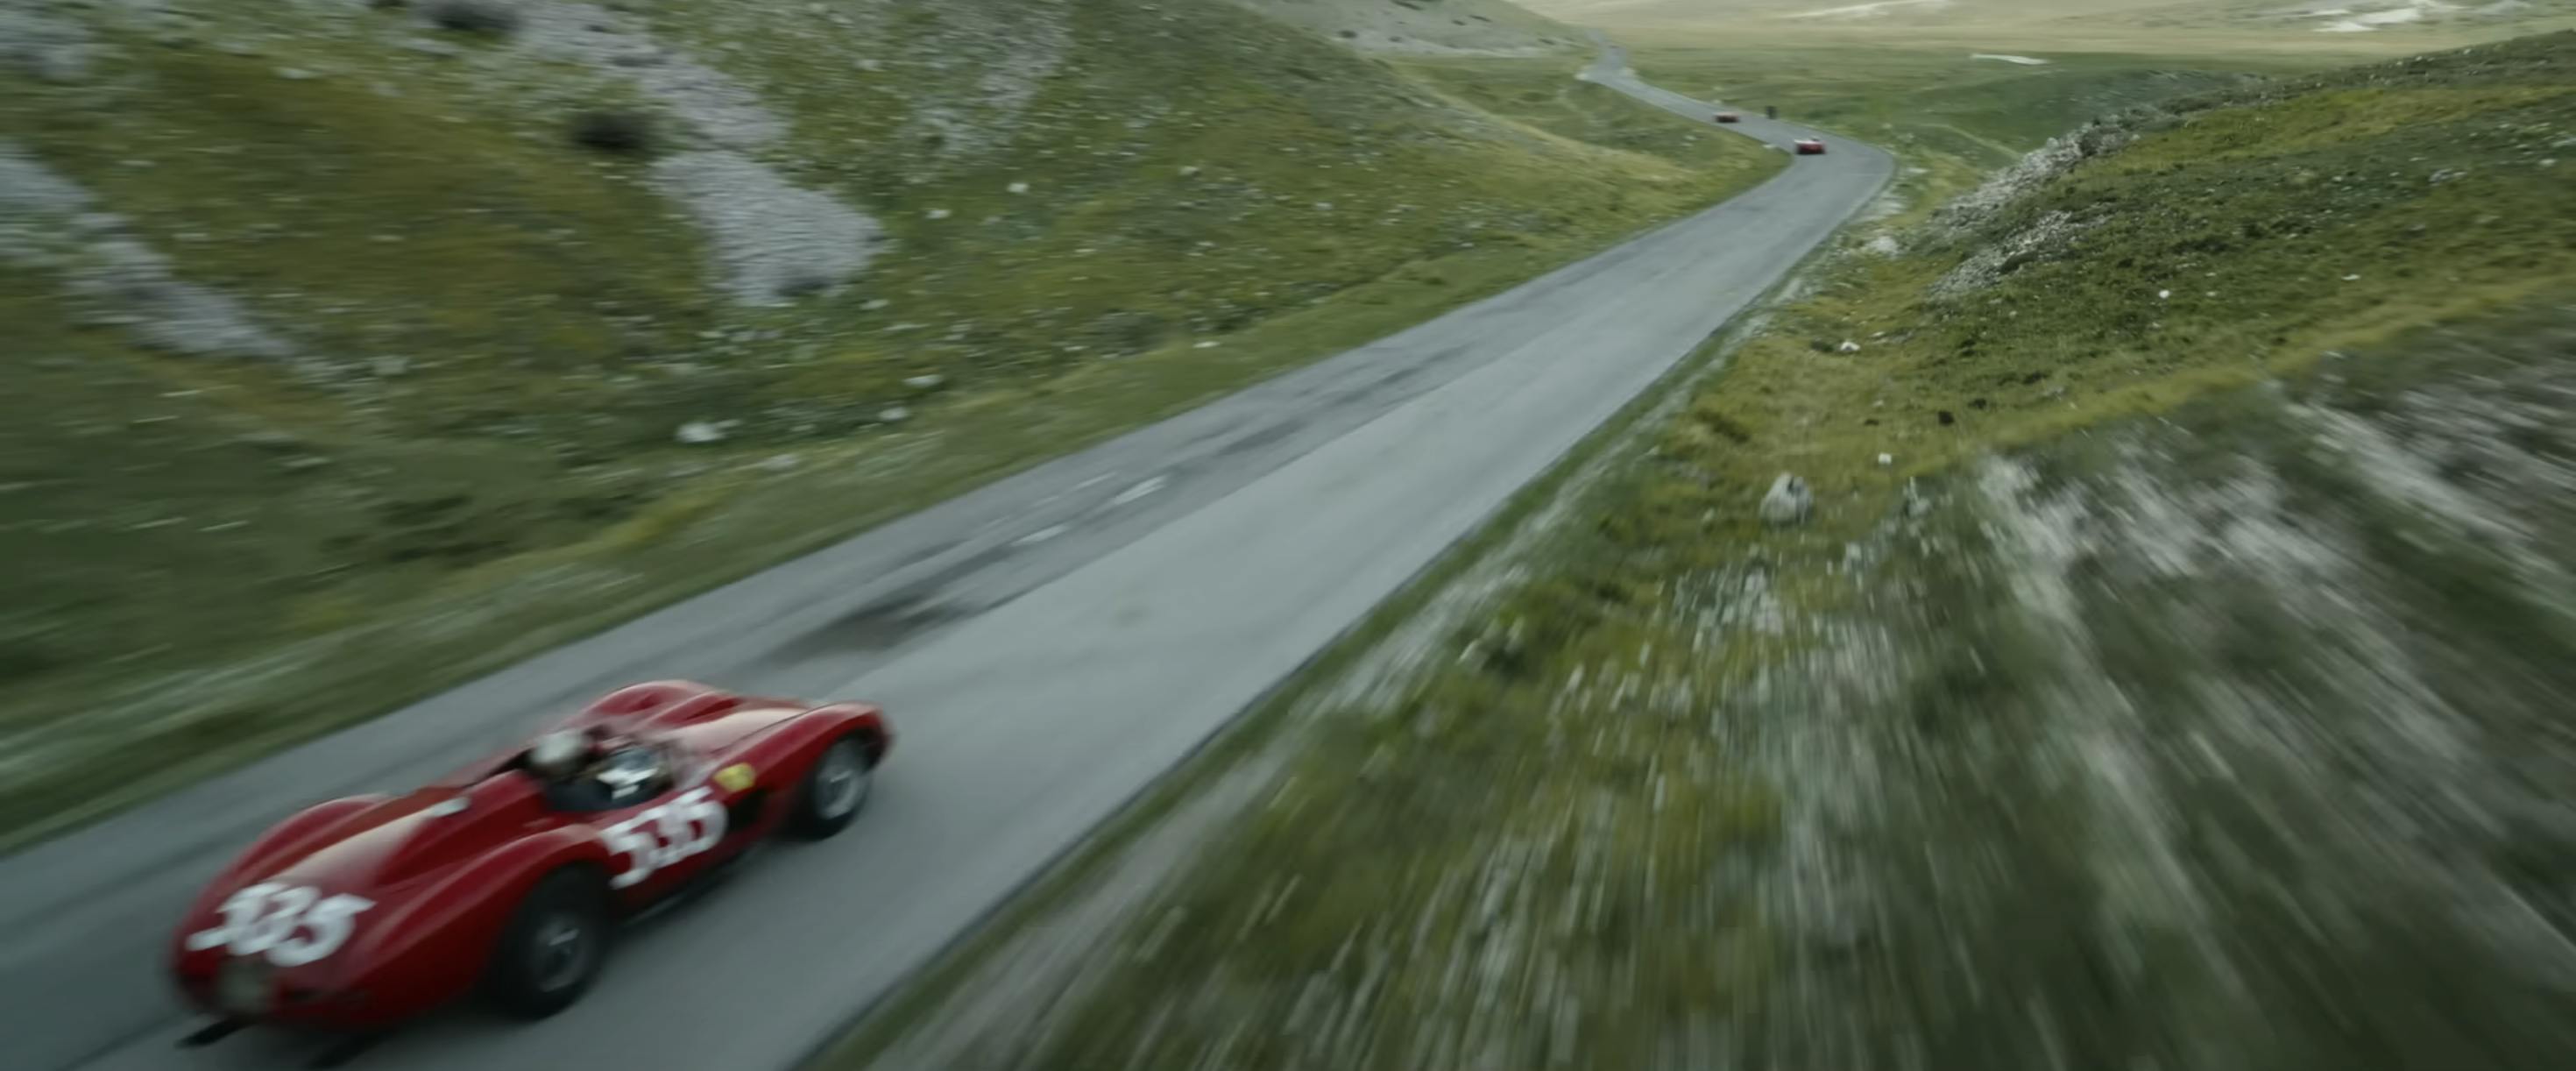 Ferrari film racing action still mountain pass straight